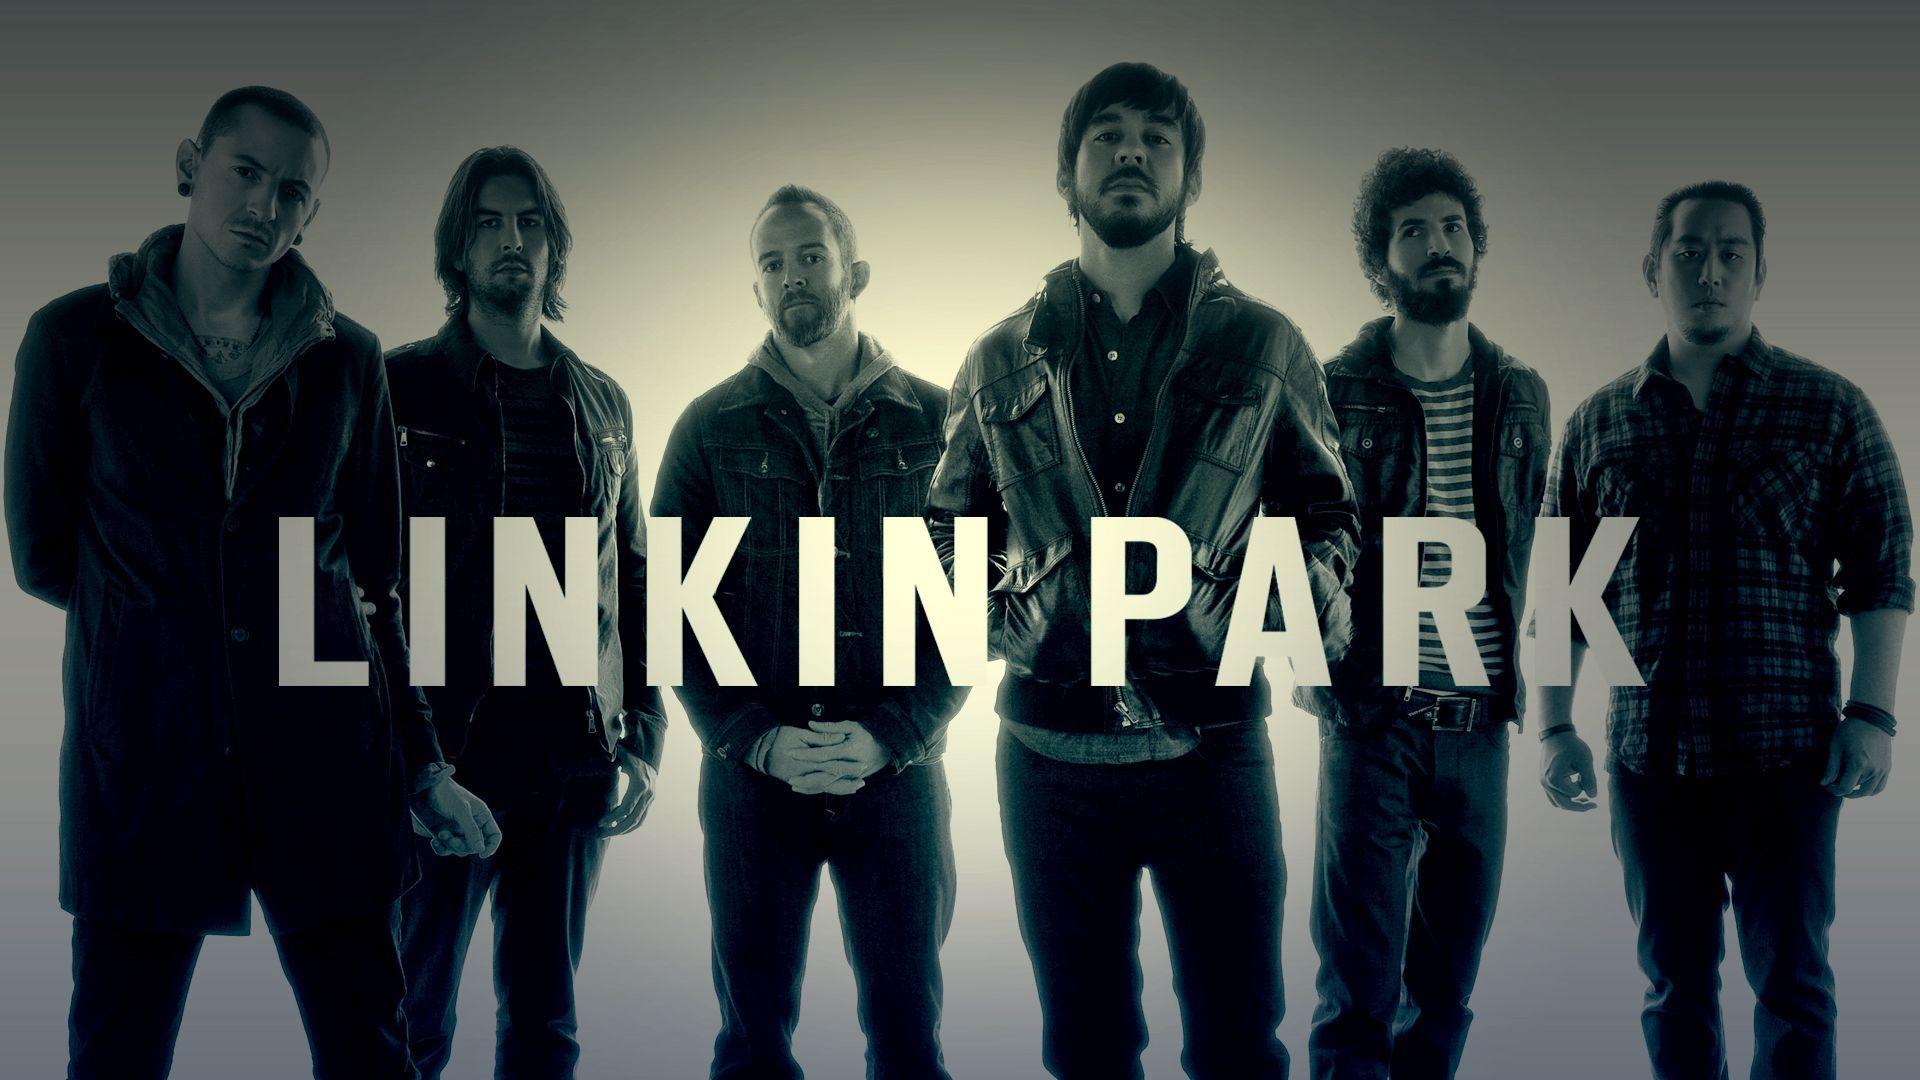 Linkin Park The Best Wallpaper, Size: 1920x1080. AmazingPict.com